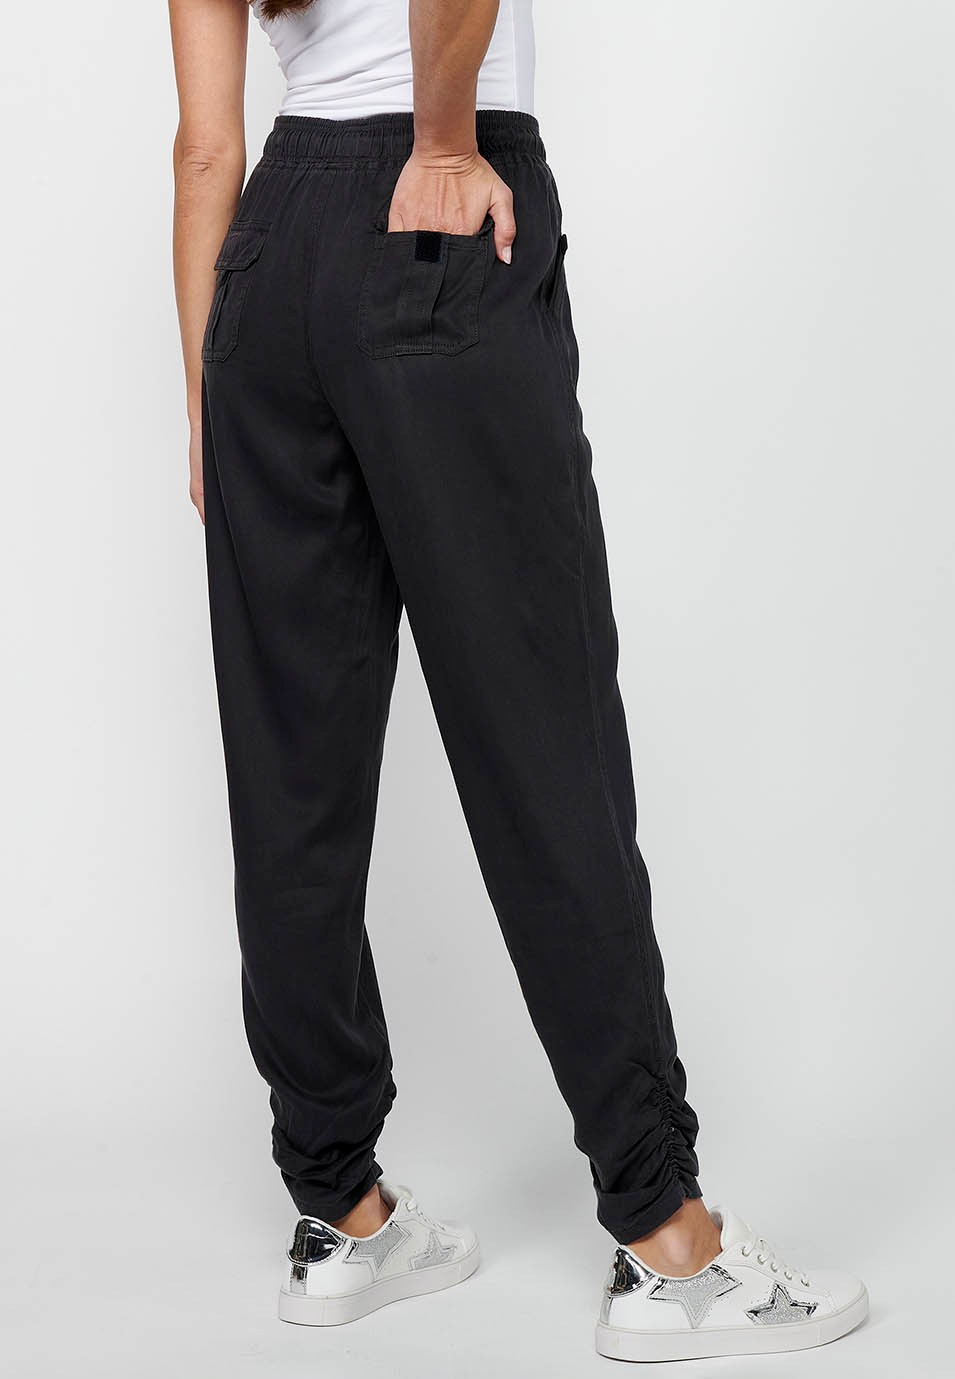 Pantalon de jogging long finition bouclée et taille caoutchoutée avec quatre poches dont deux à l'arrière avec rabat en Noir pour Femme 1